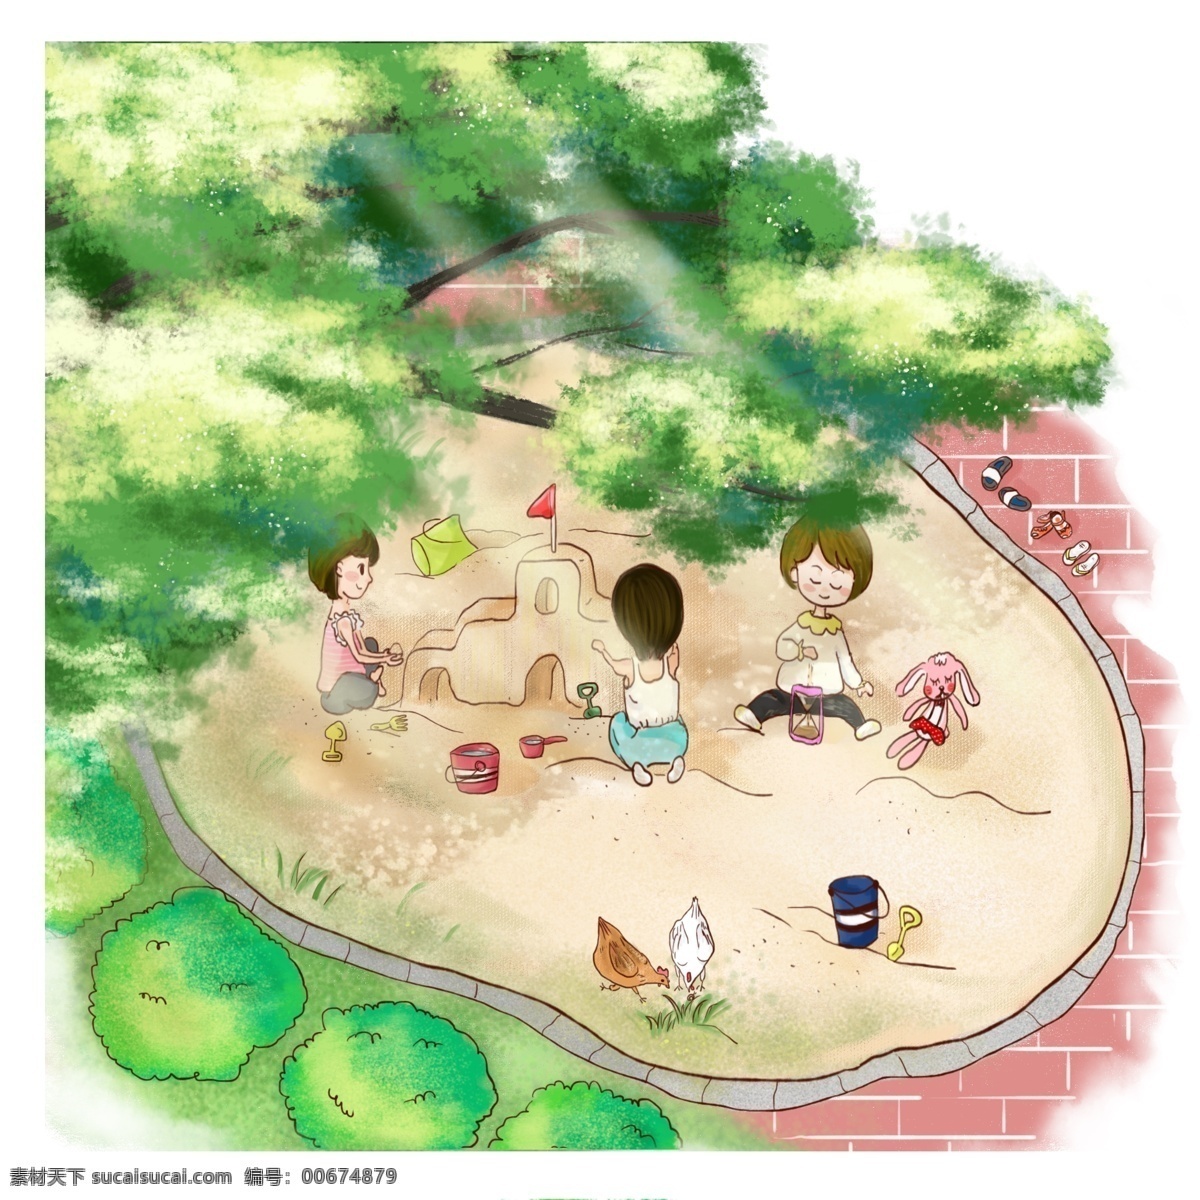 夏日 清新 可爱 风 儿童 玩耍 沙 池 小 场景 元素 夏天 小清新 可爱风 小朋友 玩耍场景 沙池 沙坑 黄色 绿色 装饰图案